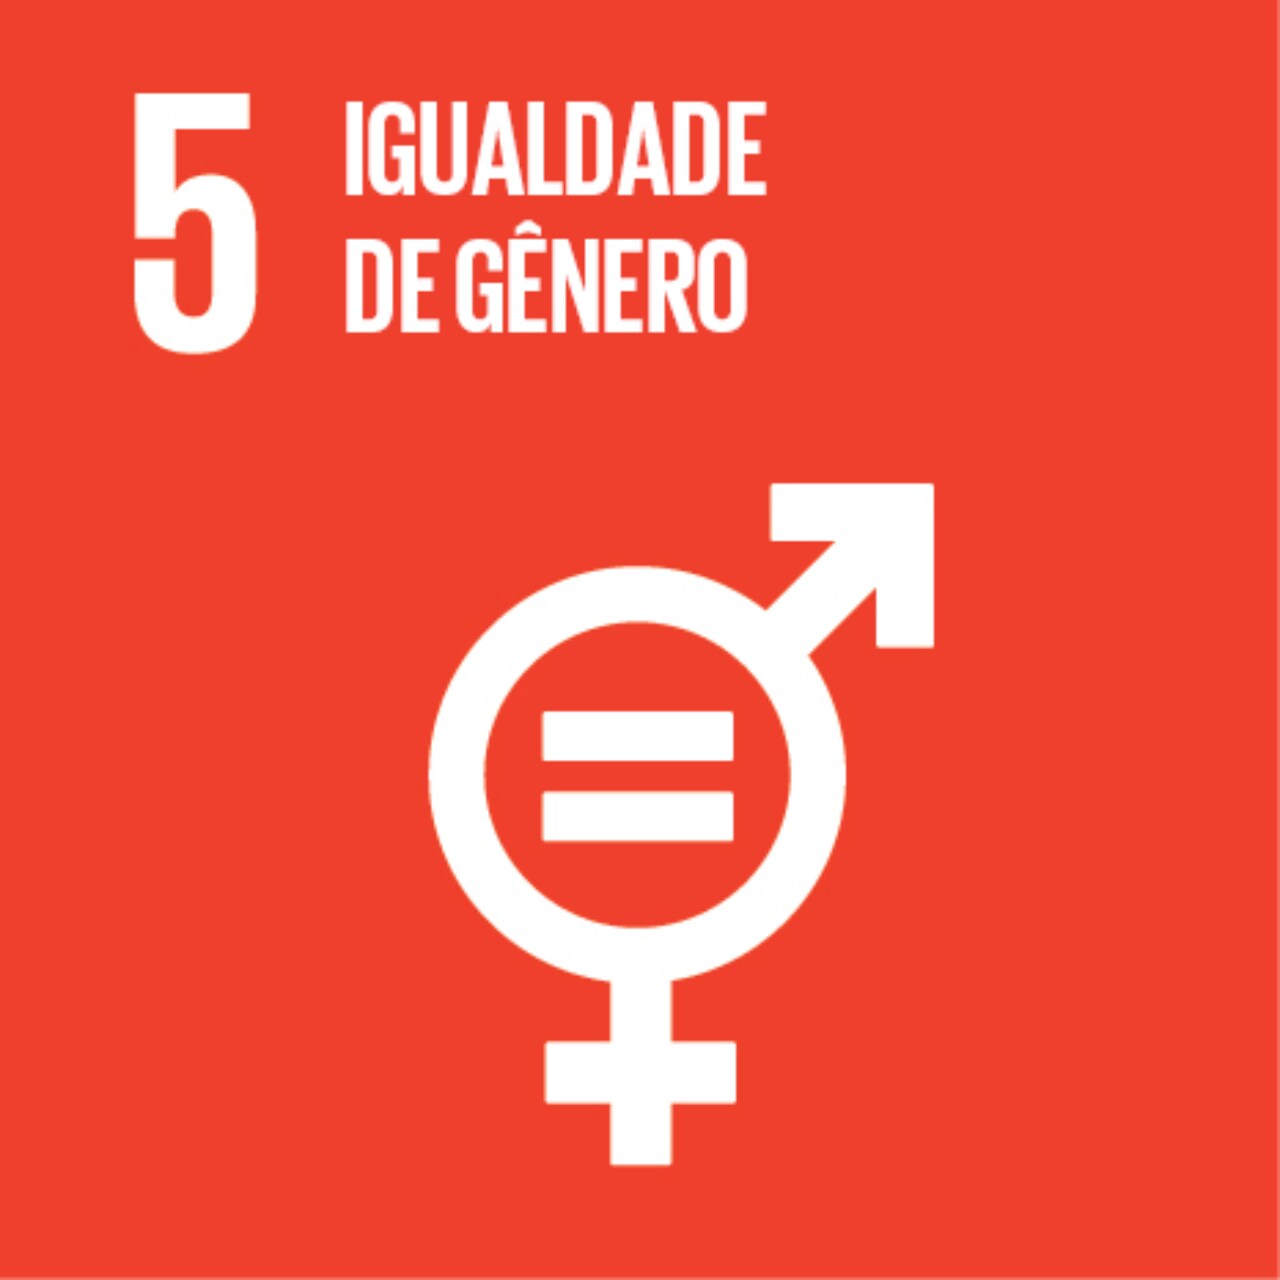 Imagem que representa o ODS número Cinco – Igualdade de gênero, com fundo alaranjado e o ícone dos gêneros masculino e feminino, com um sinal de igual dentro dele.